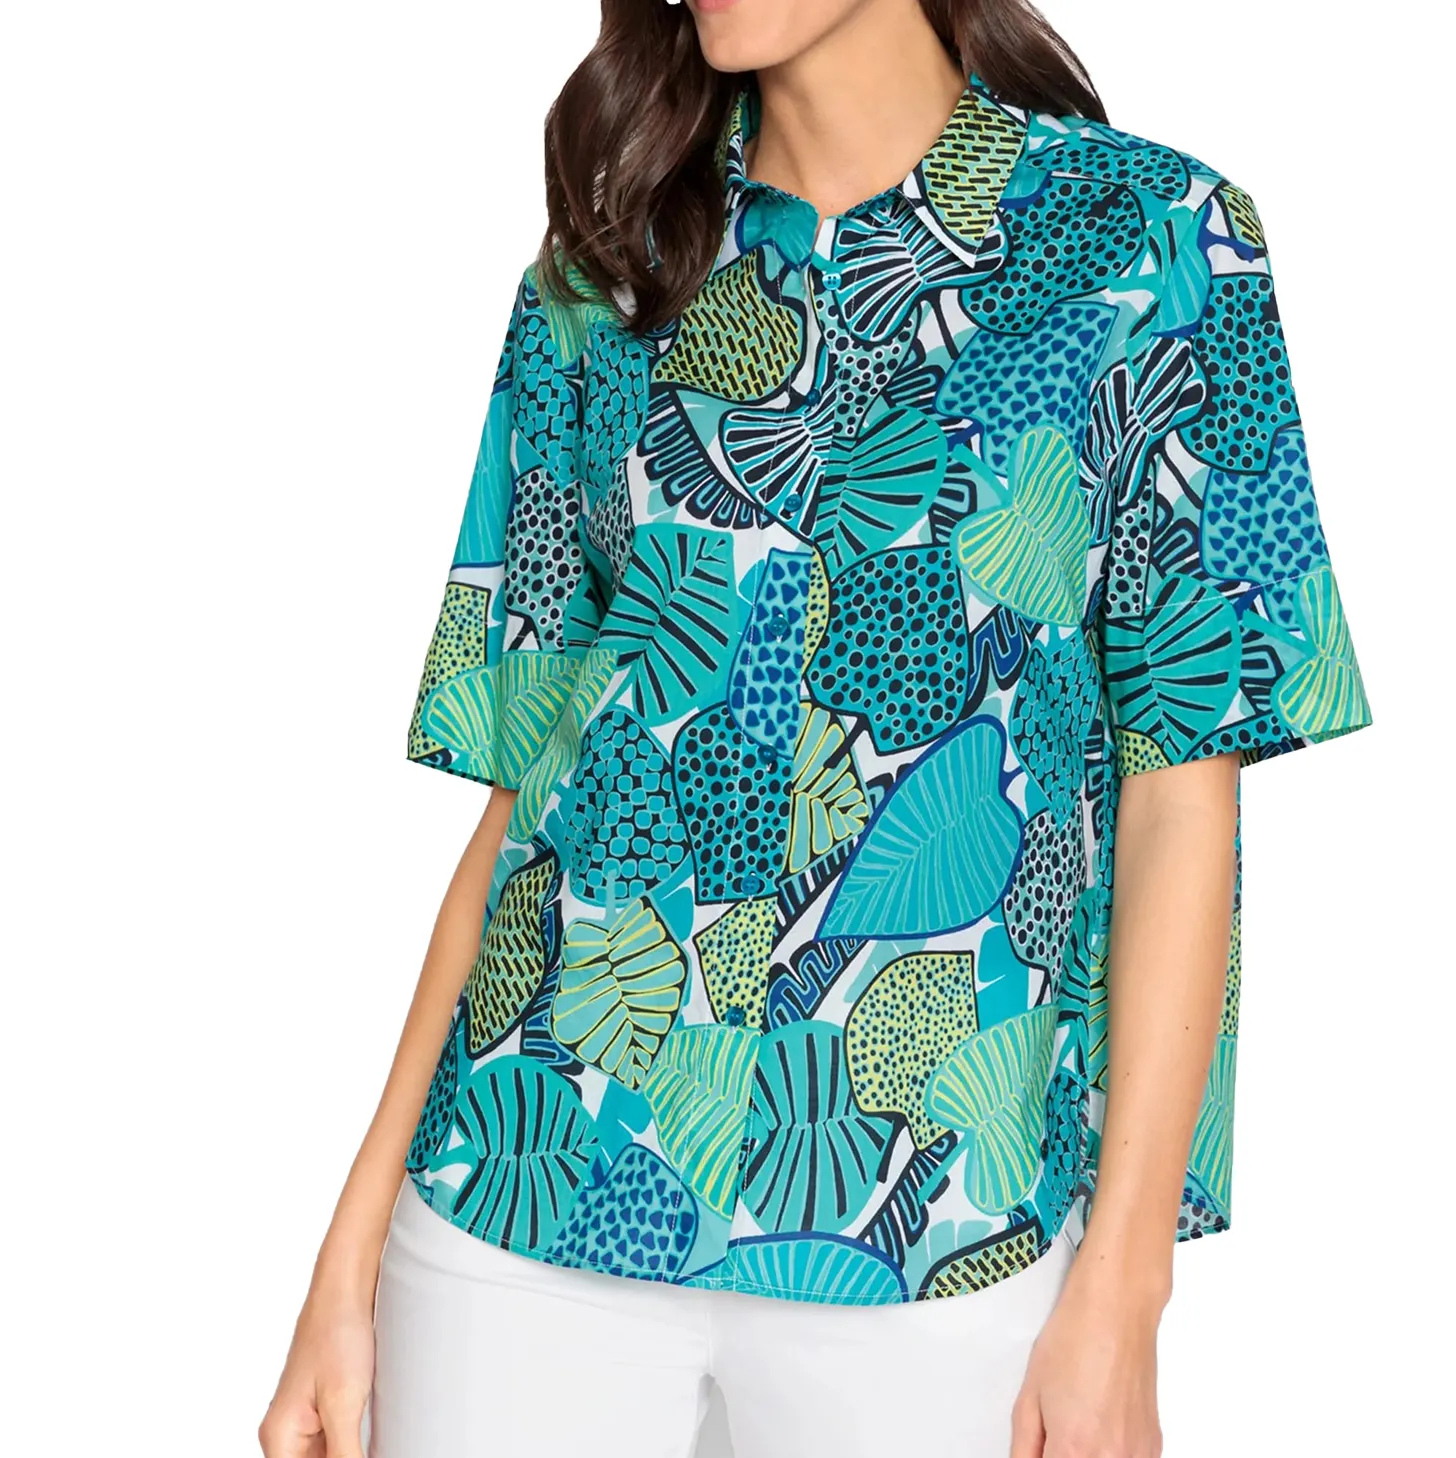 Tamaño de EE. UU. Impresión personalizada Camisas de mujer Tela de rayón suave Ropa de verano Blusa de mujer hawaiana